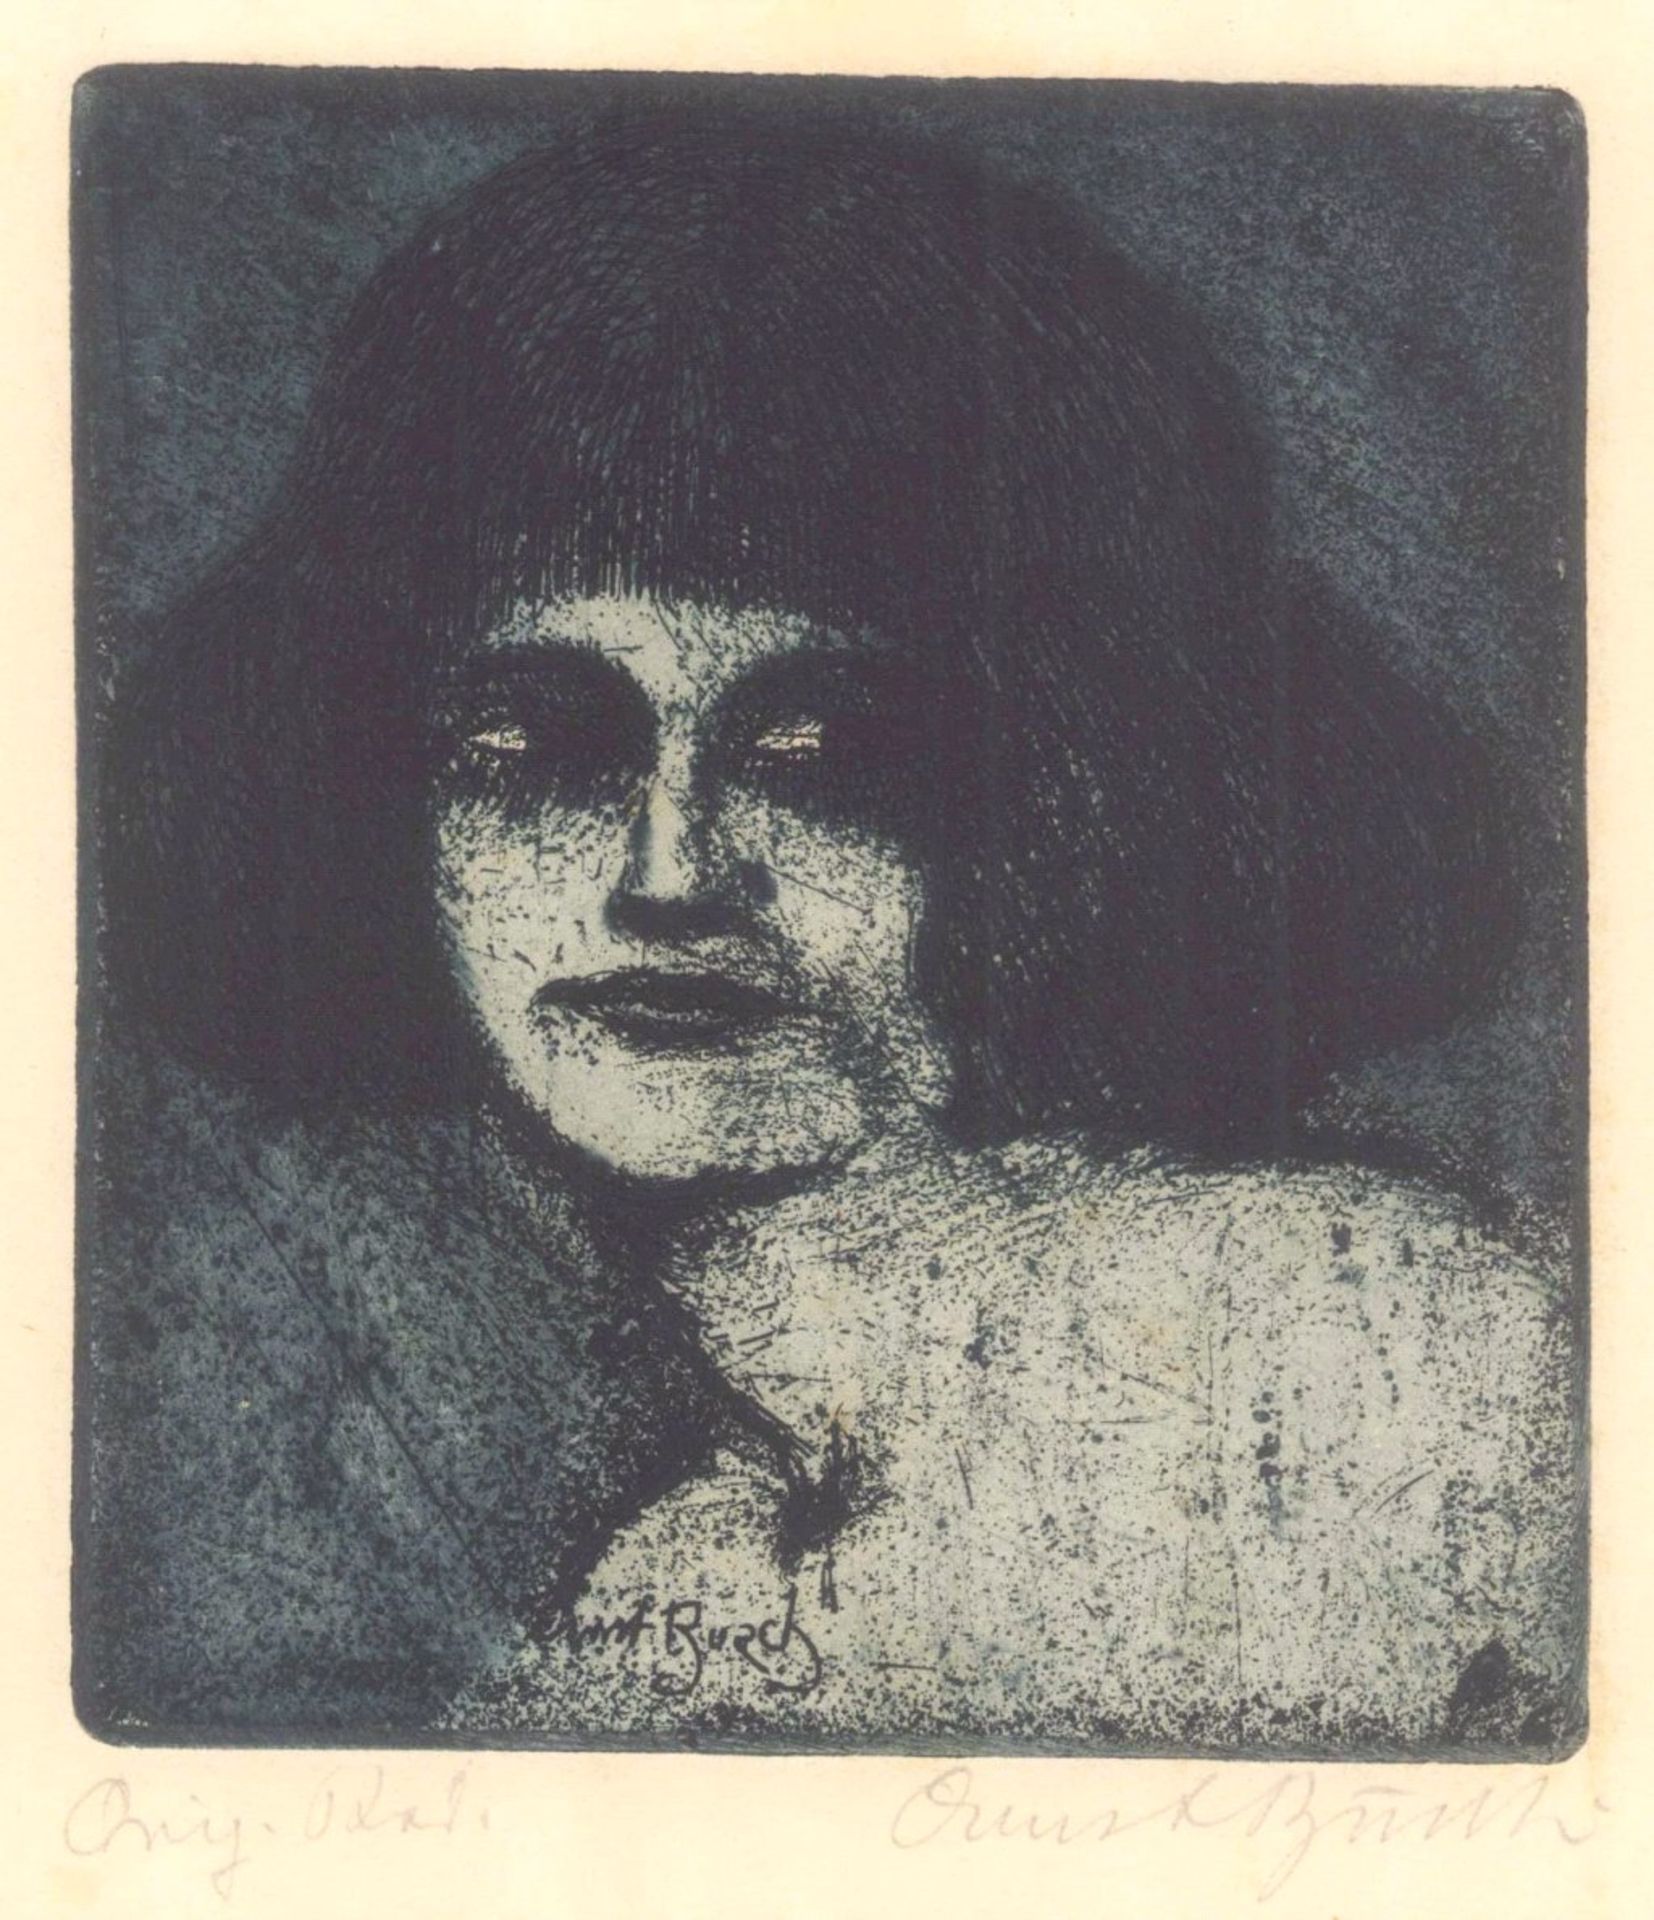 Ernst Busch, MädchenkopfRadierung, unten rechts mit Bleistift signiert, versobetitelt, ca. 45 x 31,5